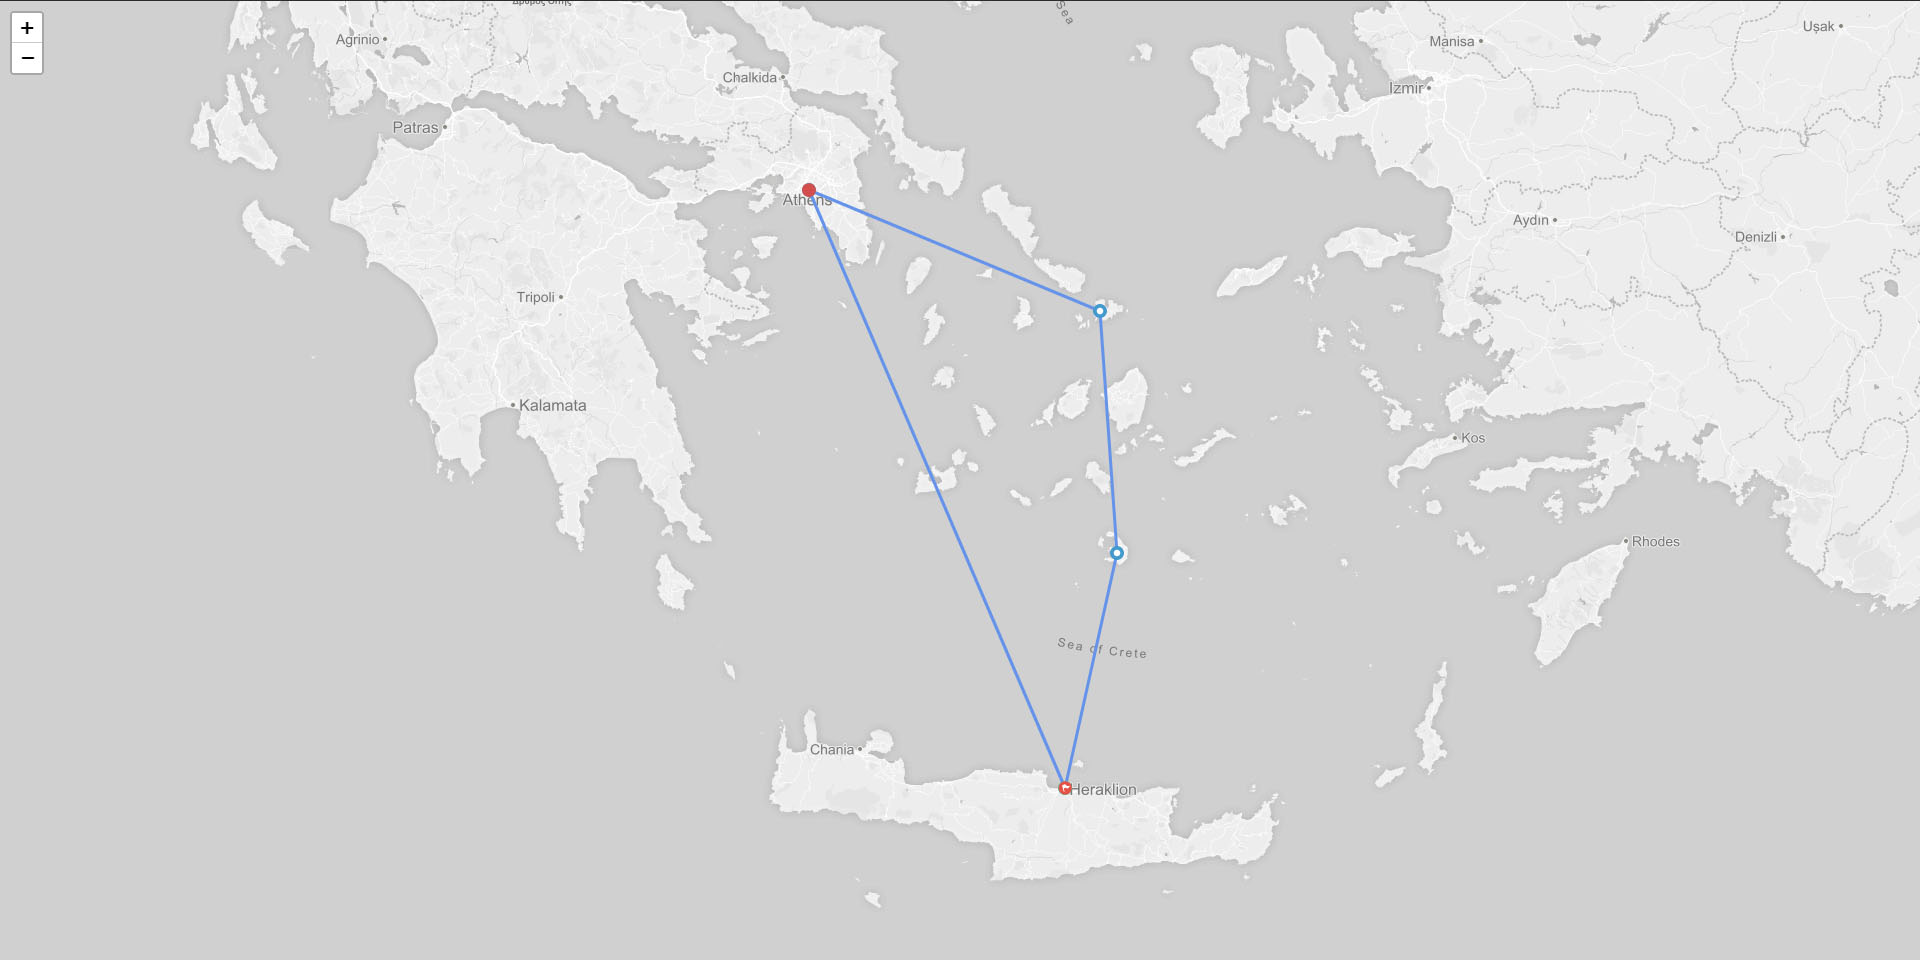 Crete / Santorini / Mykonos / Athens / Crete 